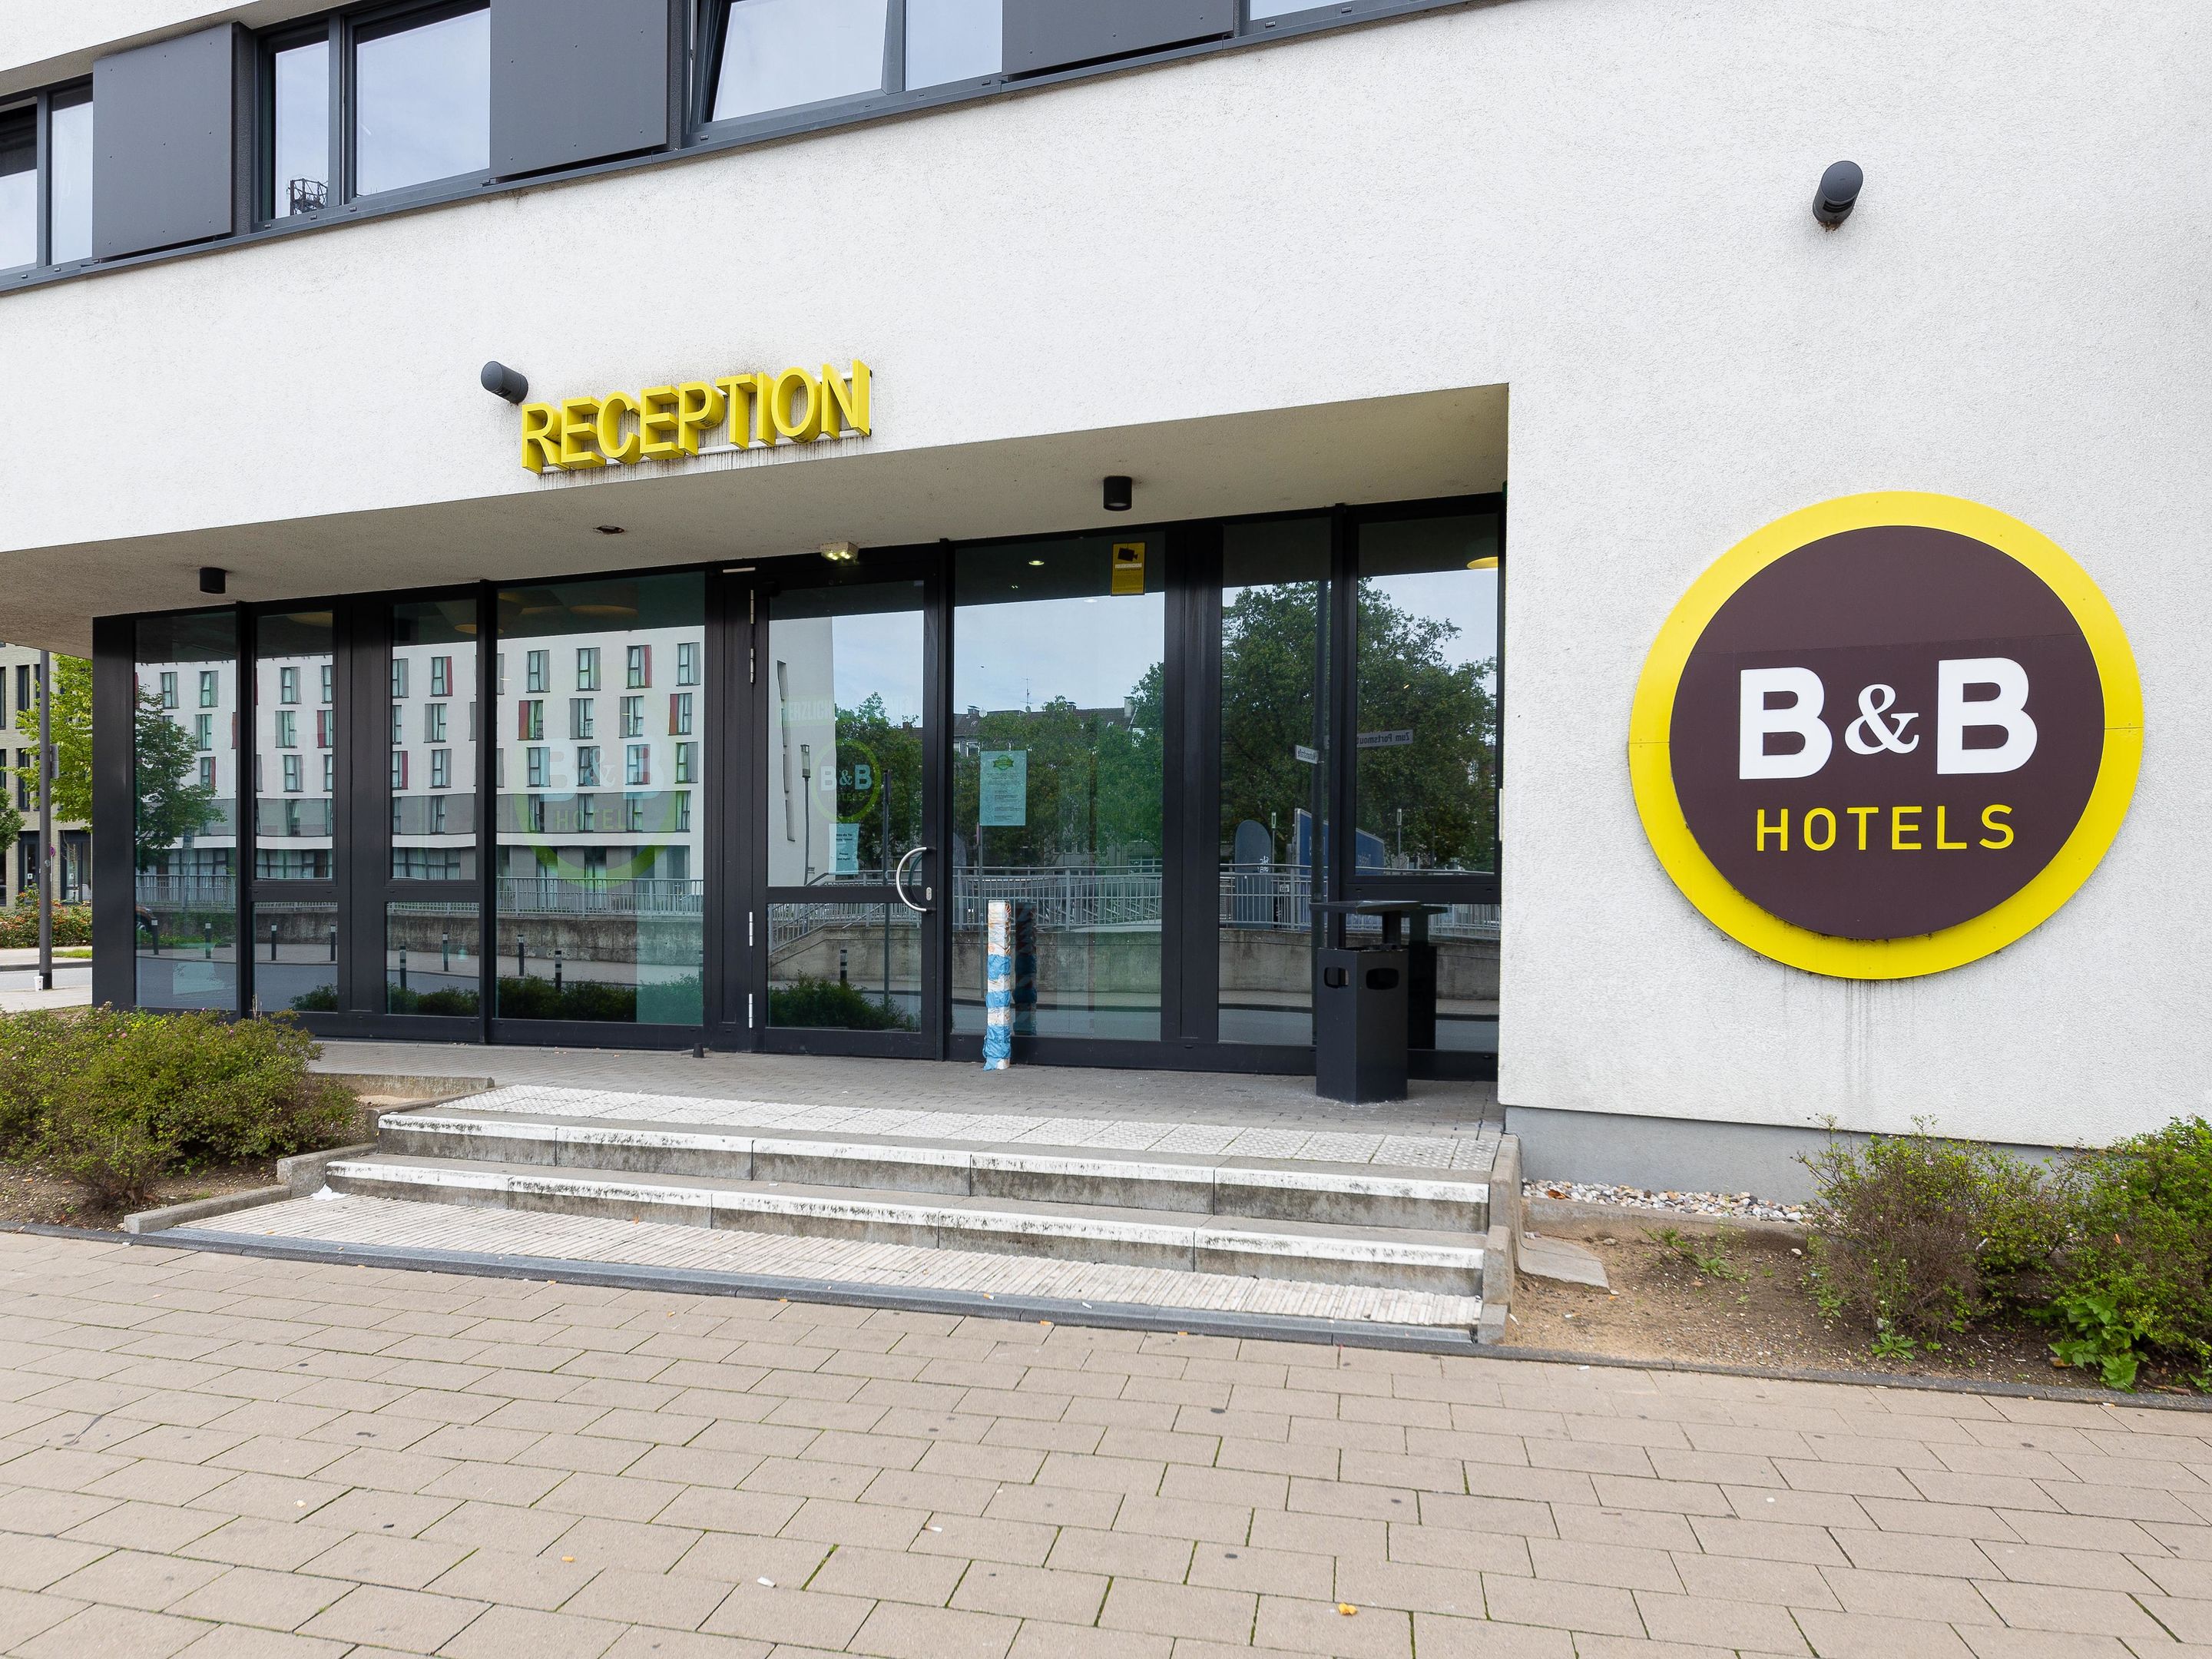 B&B HOTEL Duisburg Hbf-Süd, Zum Portsmouthplatz 20 in Duisburg